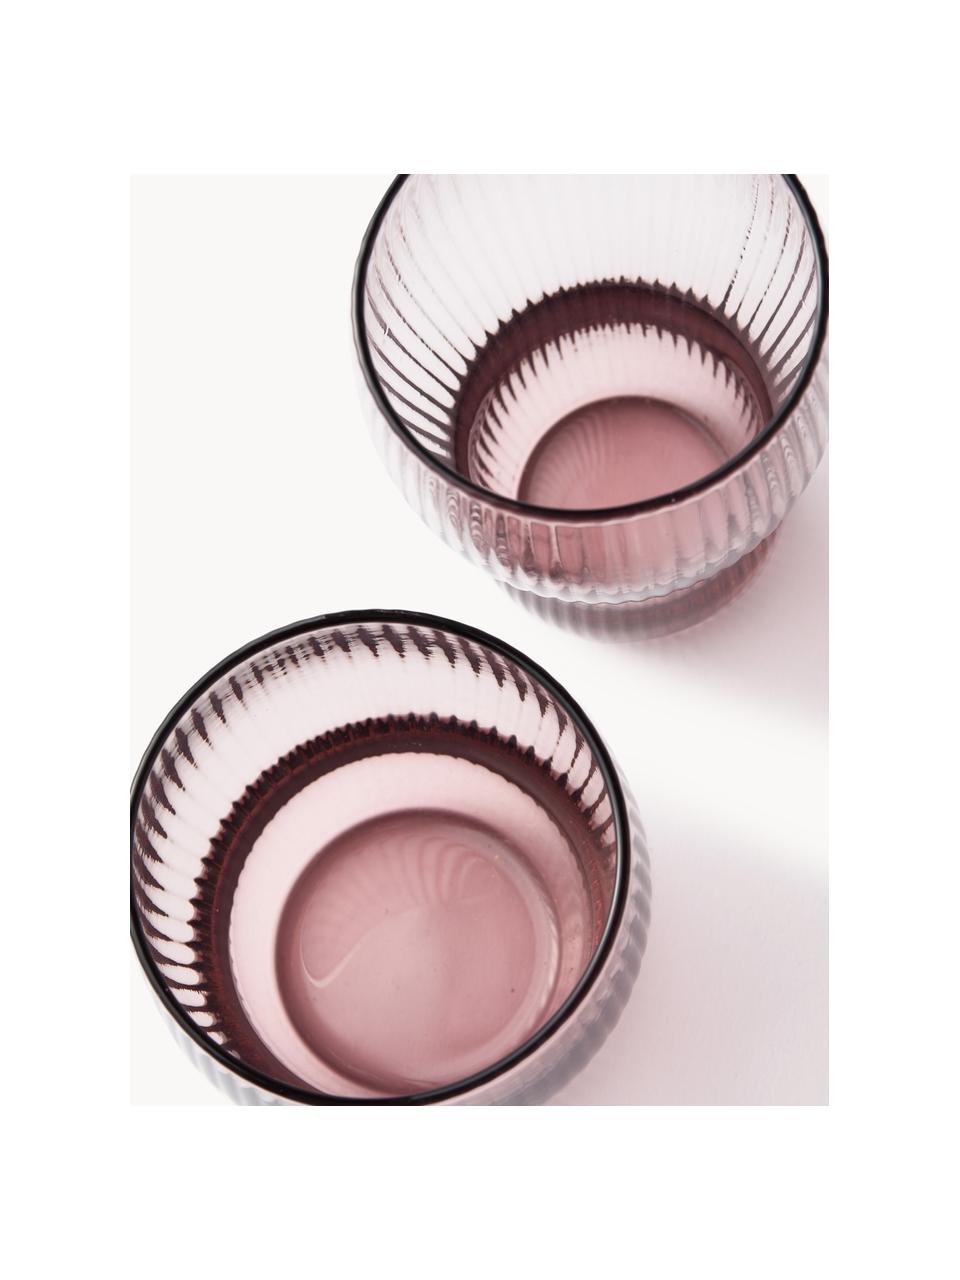 Ručně foukané sklenice na long drink s rýhovaným povrchem Pum, 2 ks, Foukané sklo, Růžová, Ø 7 cm, V 12 cm, 300 ml